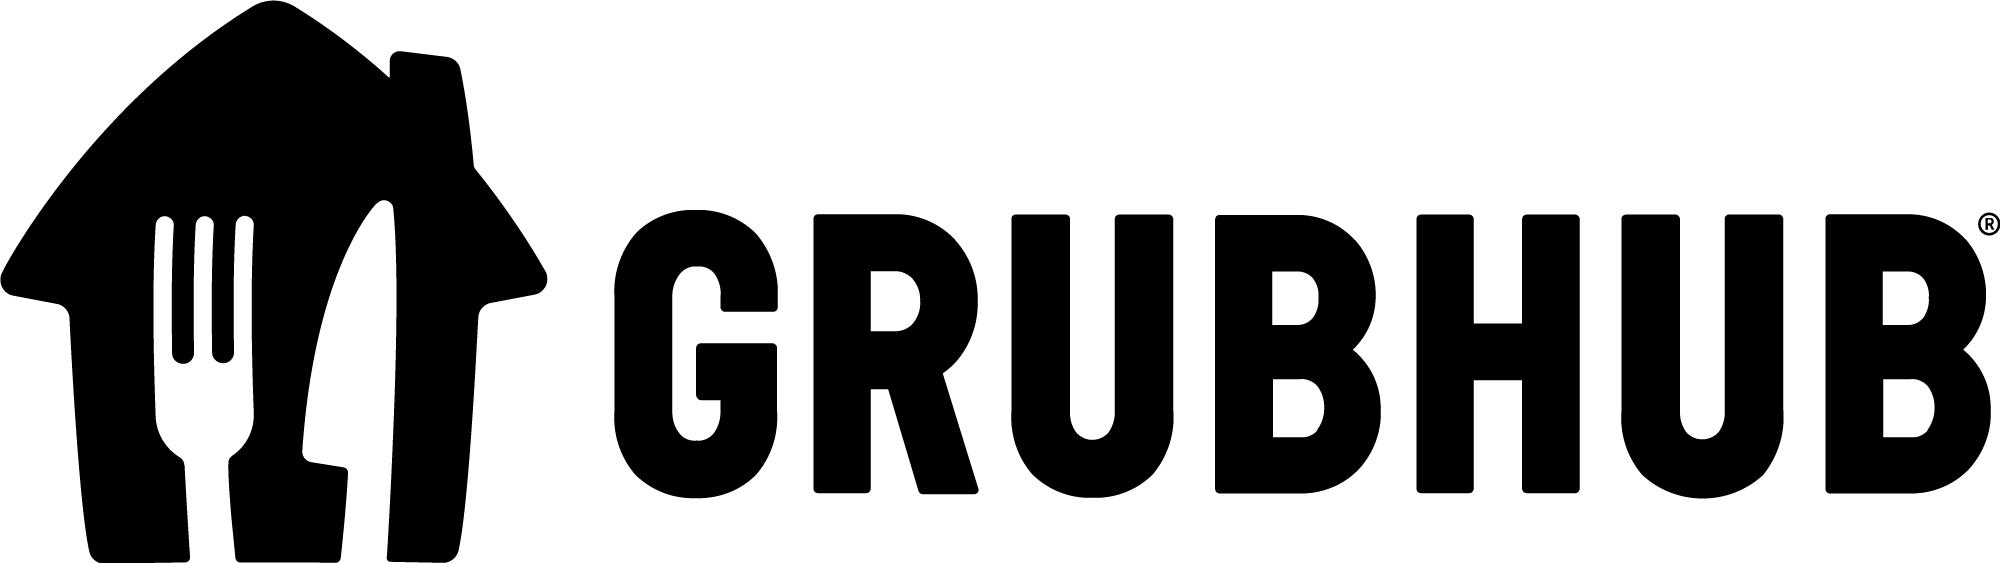 grubhub logo black